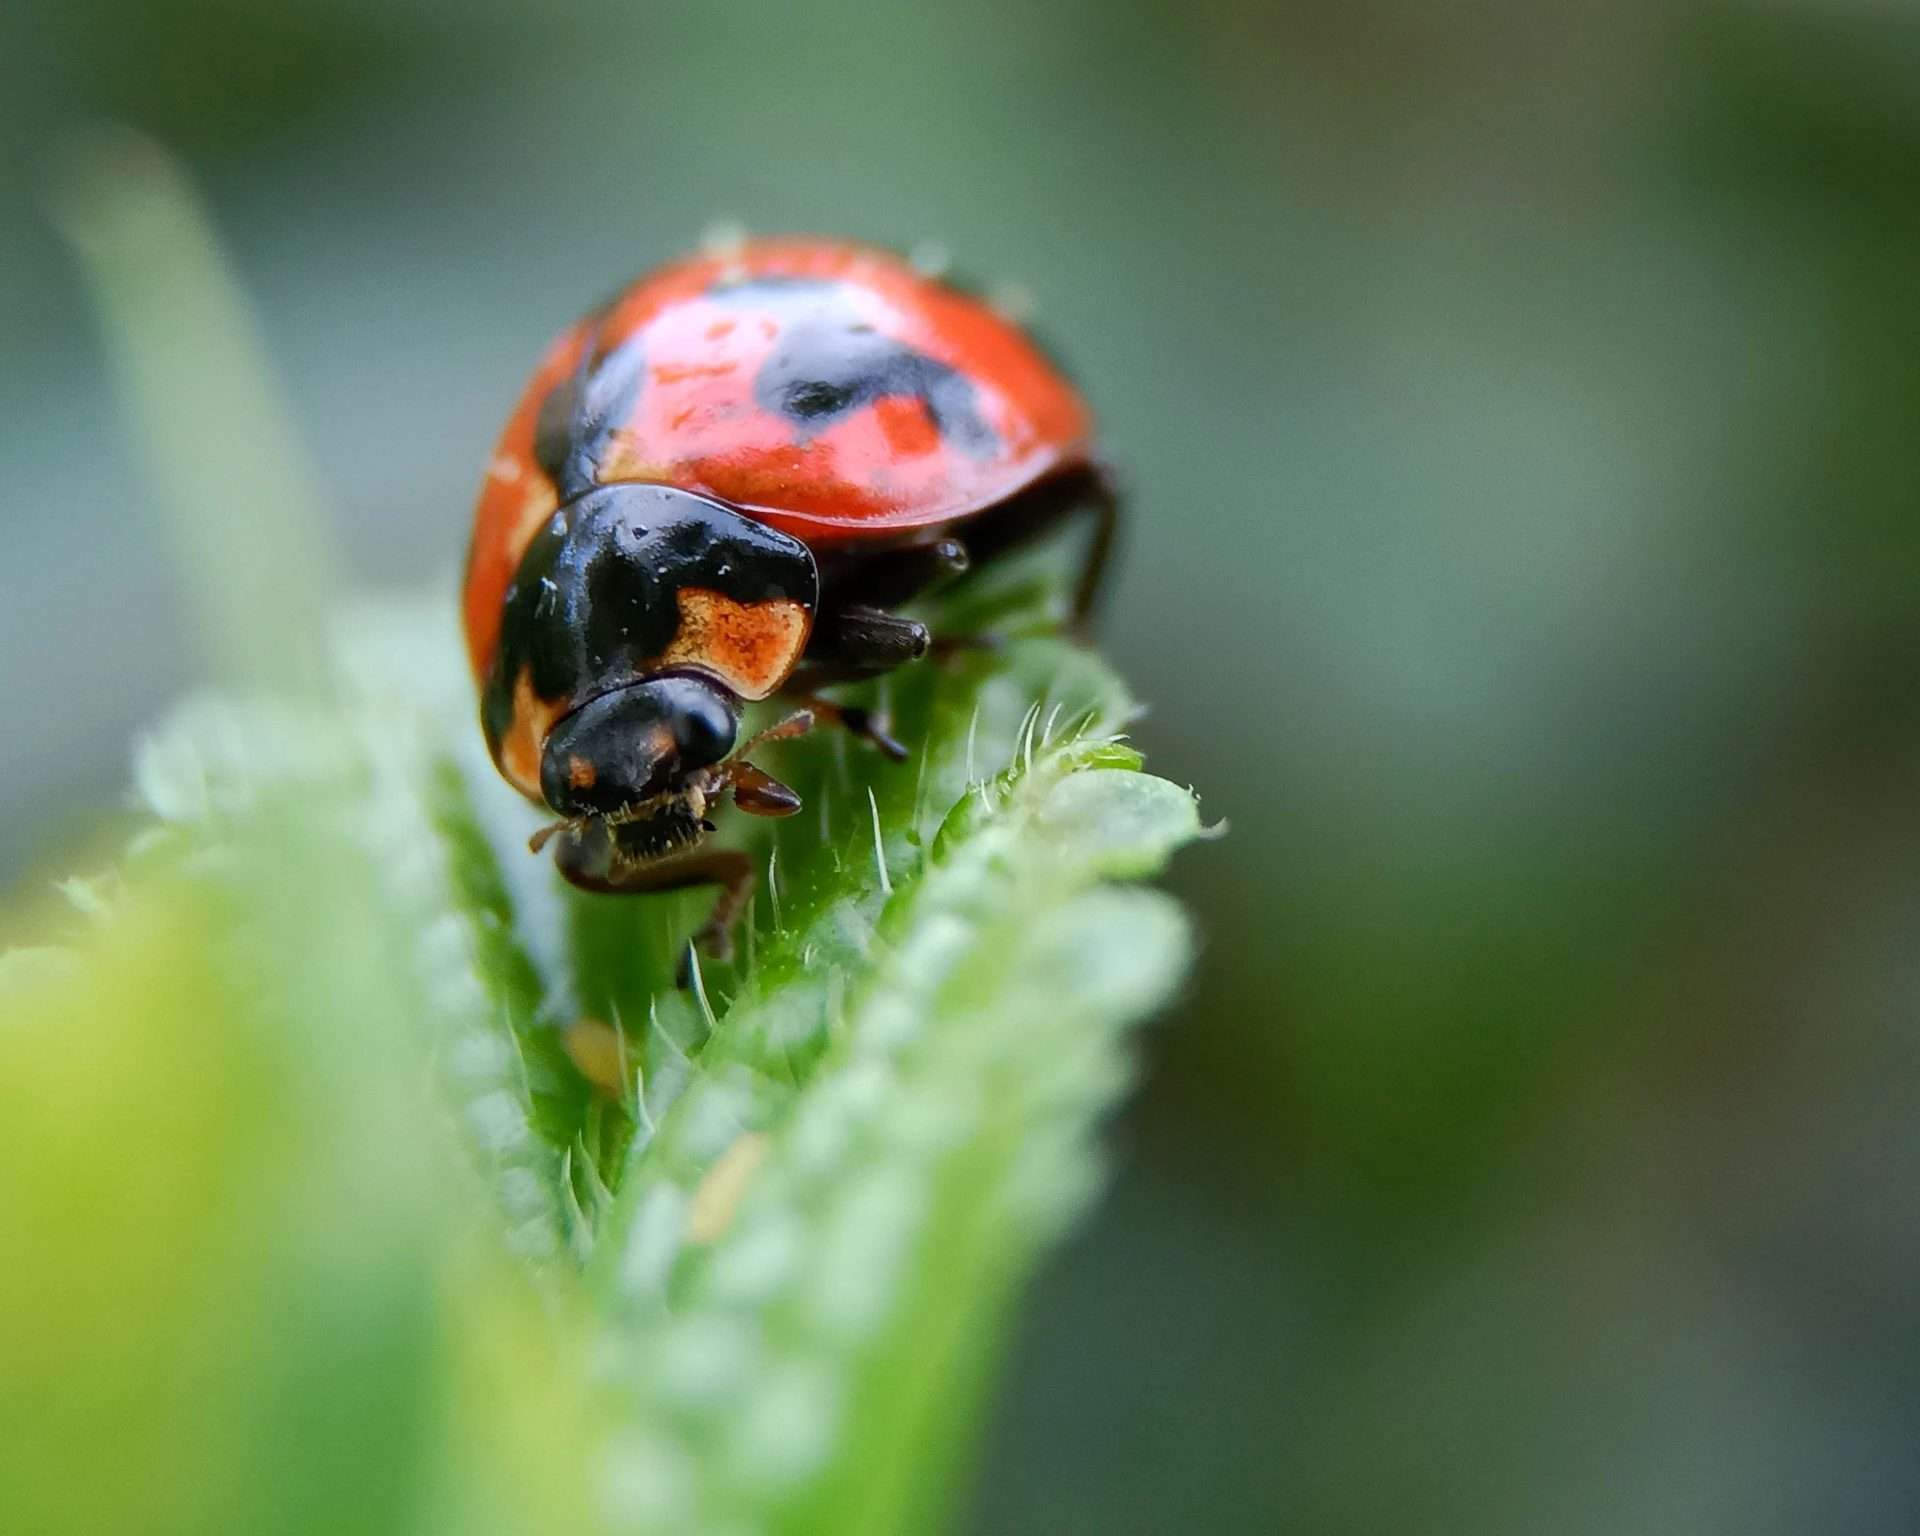 Solo ladybug crawling on leaf.